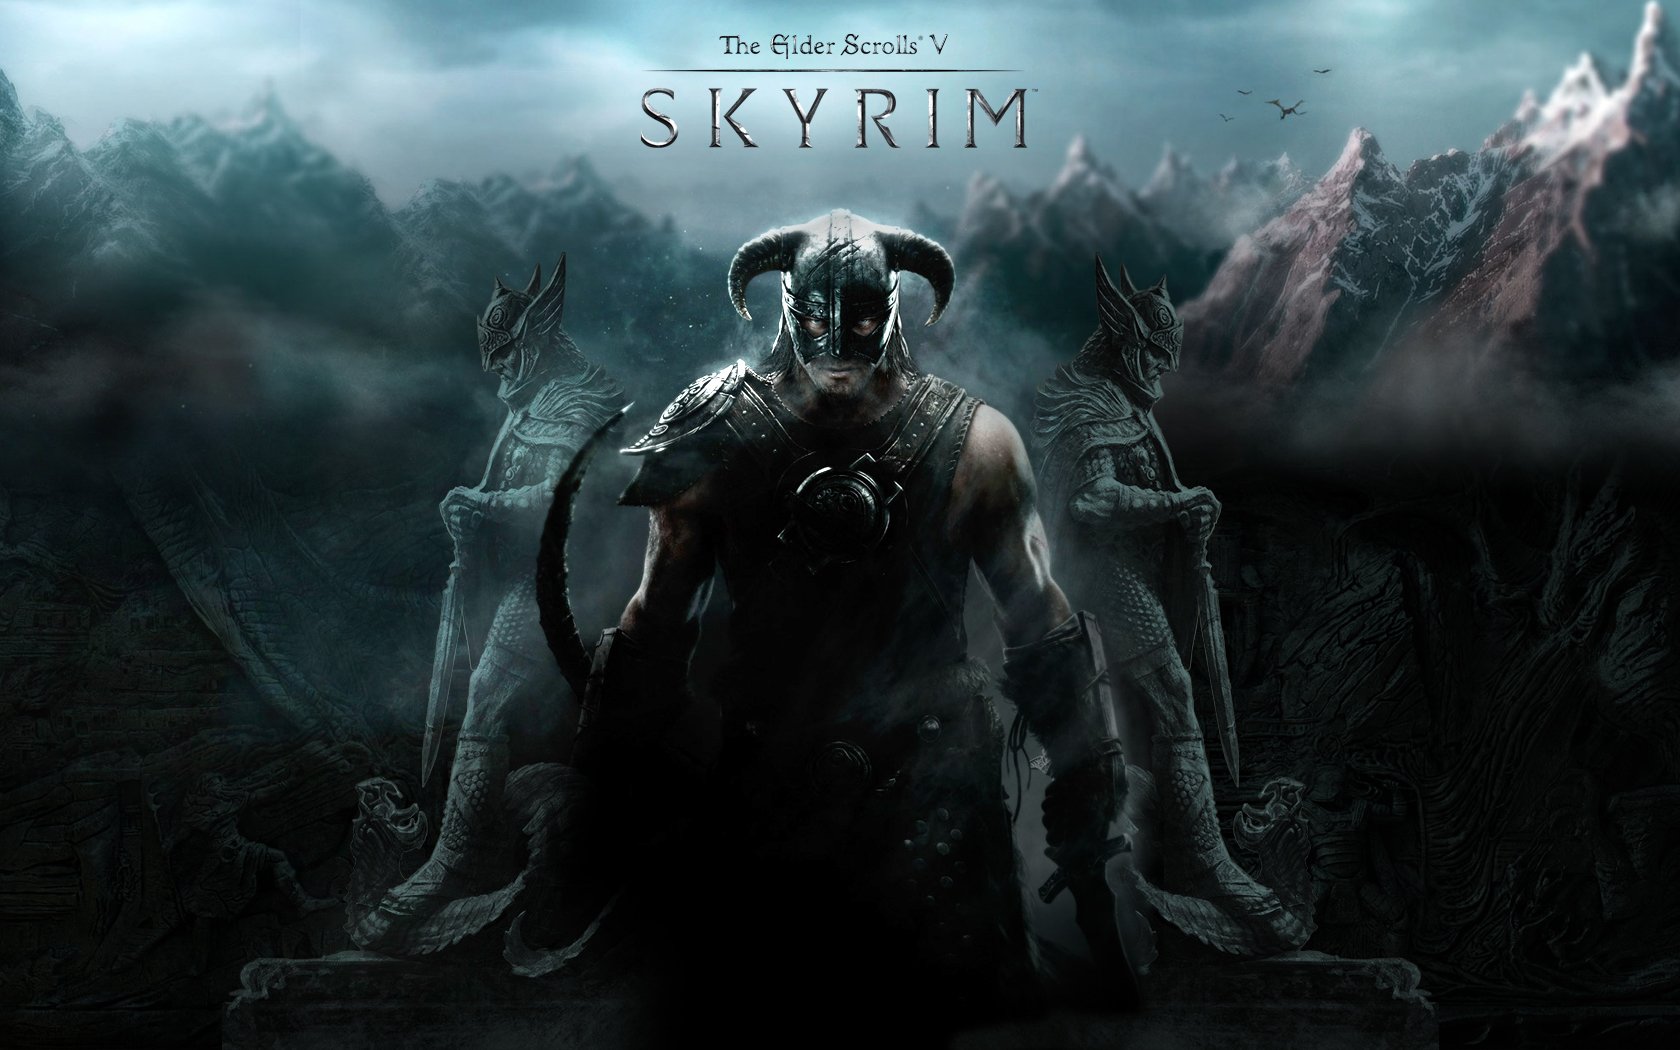 The Elder Scrolls V Skyrim Wallpaper and Background Image